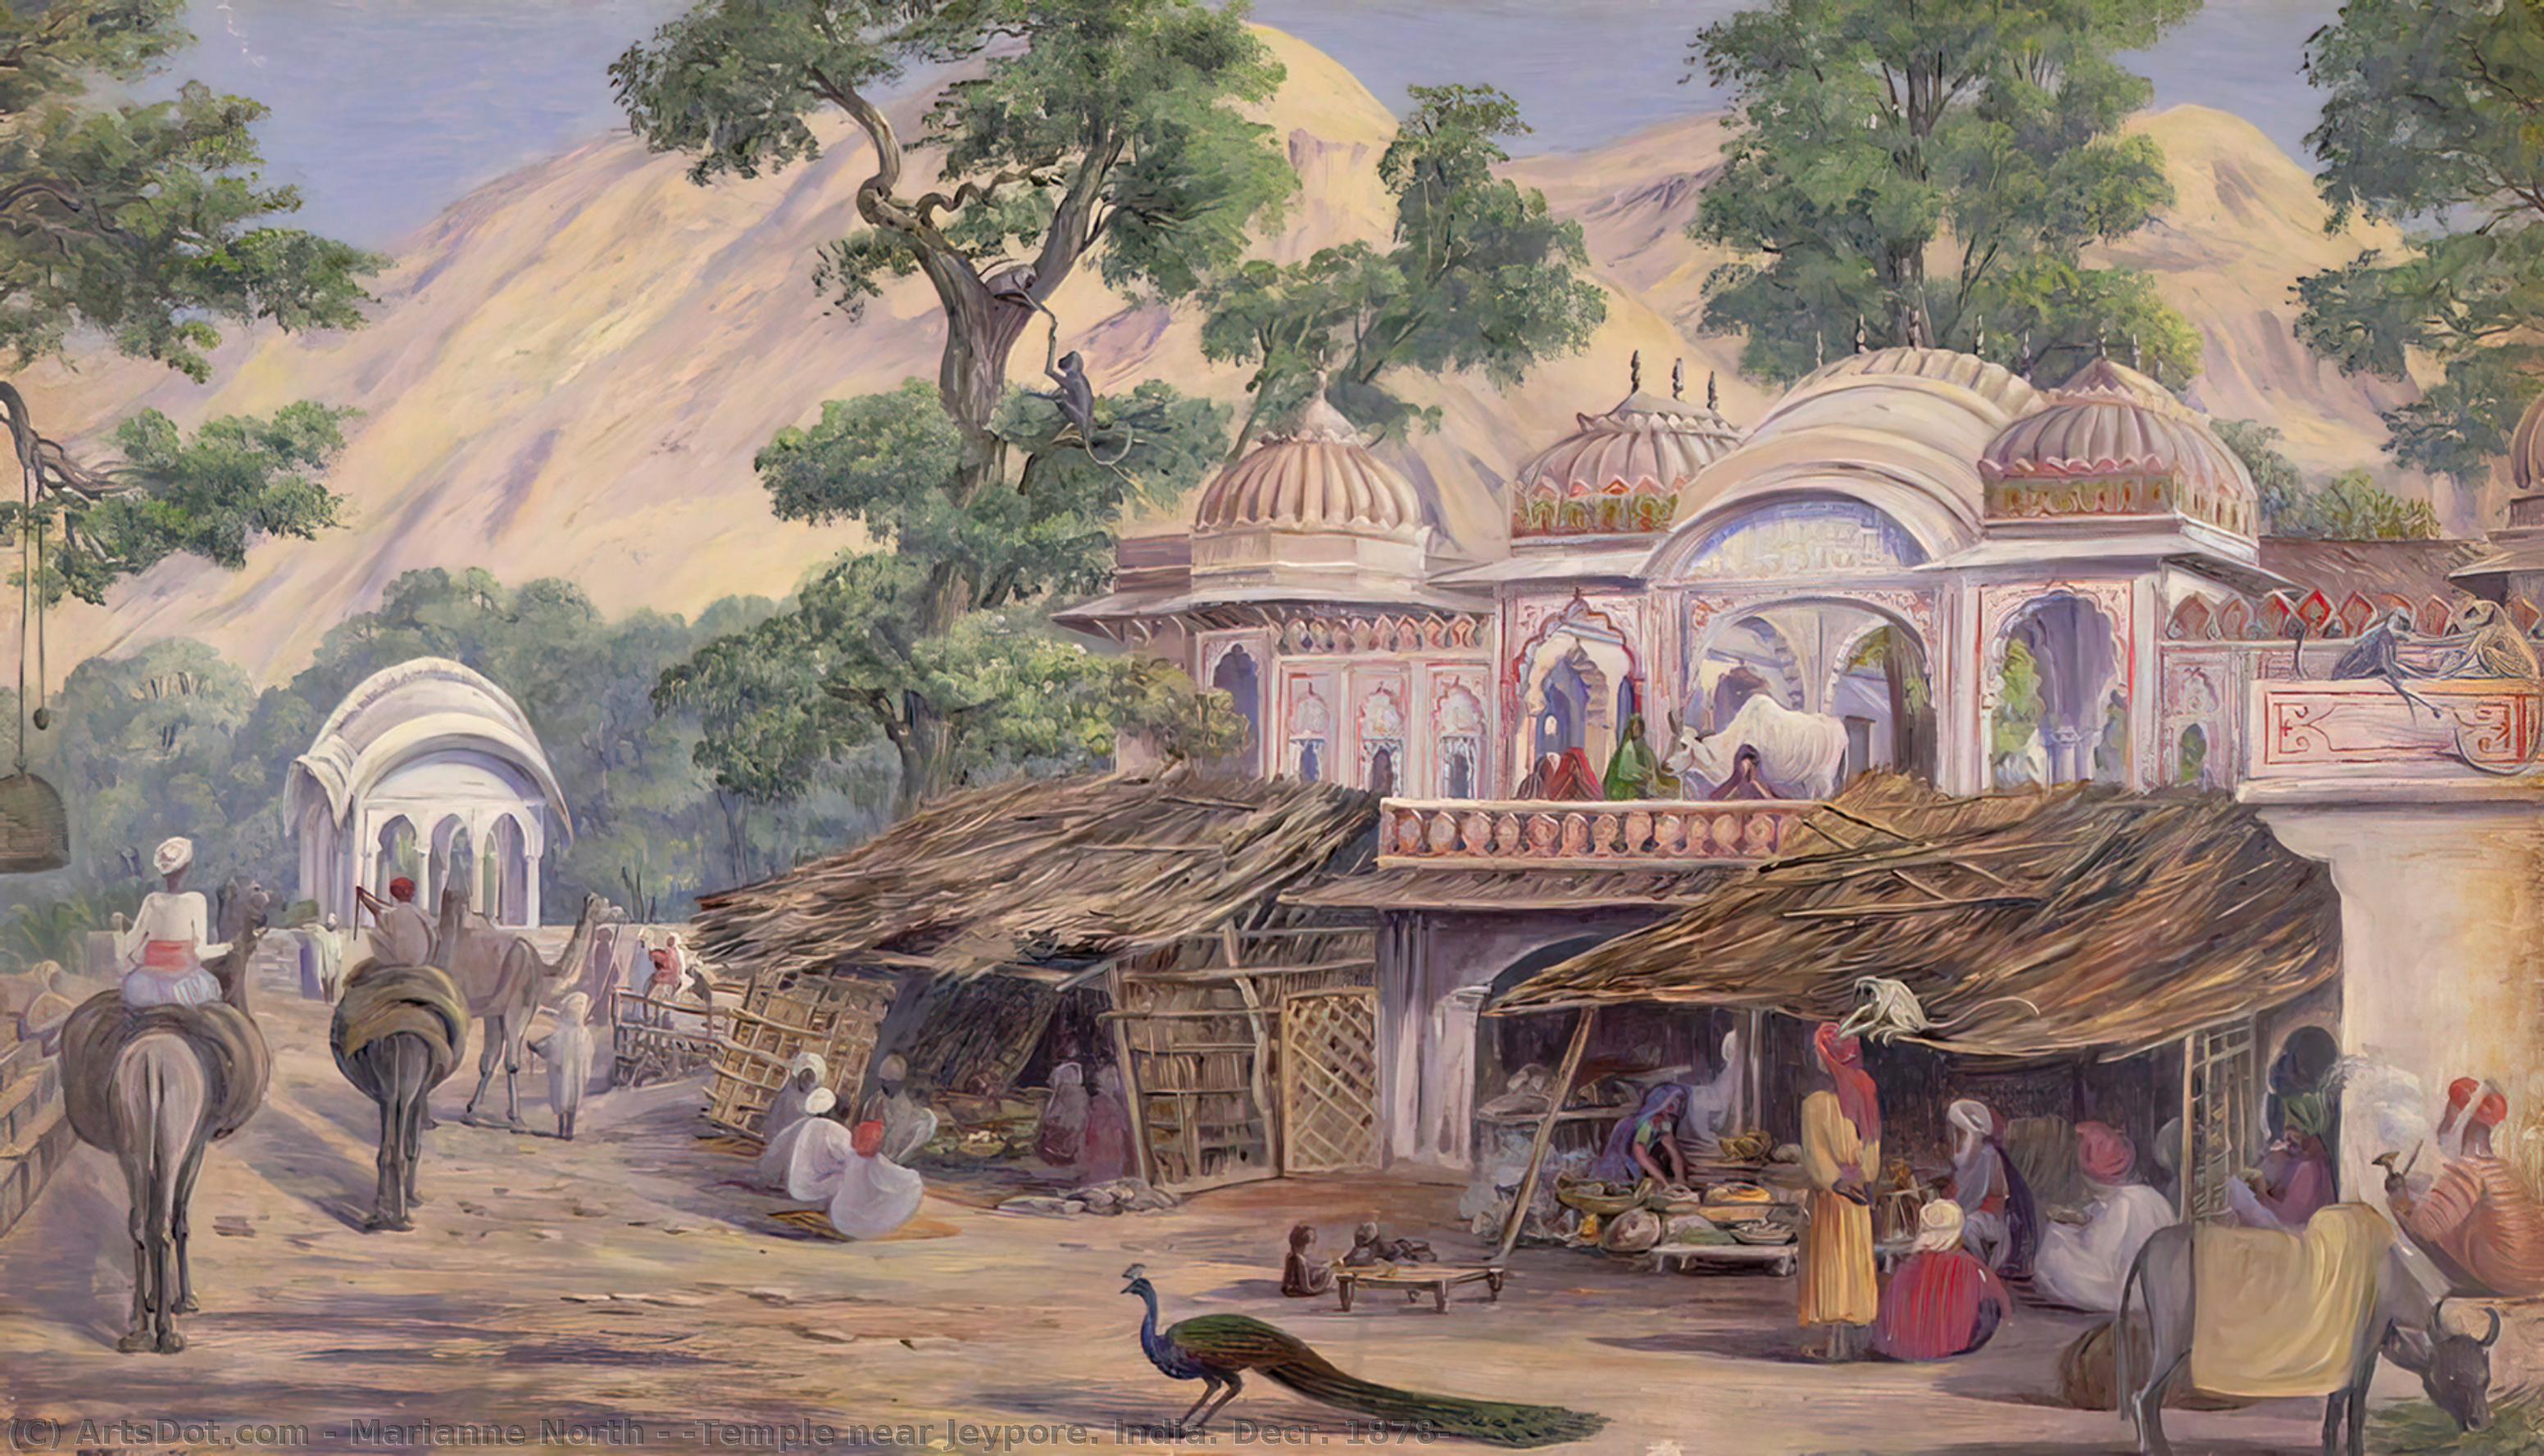 Order Artwork Replica `Temple near Jeypore. India. Decr. 1878`, 1878 by Marianne North (1830-1890, United Kingdom) | ArtsDot.com